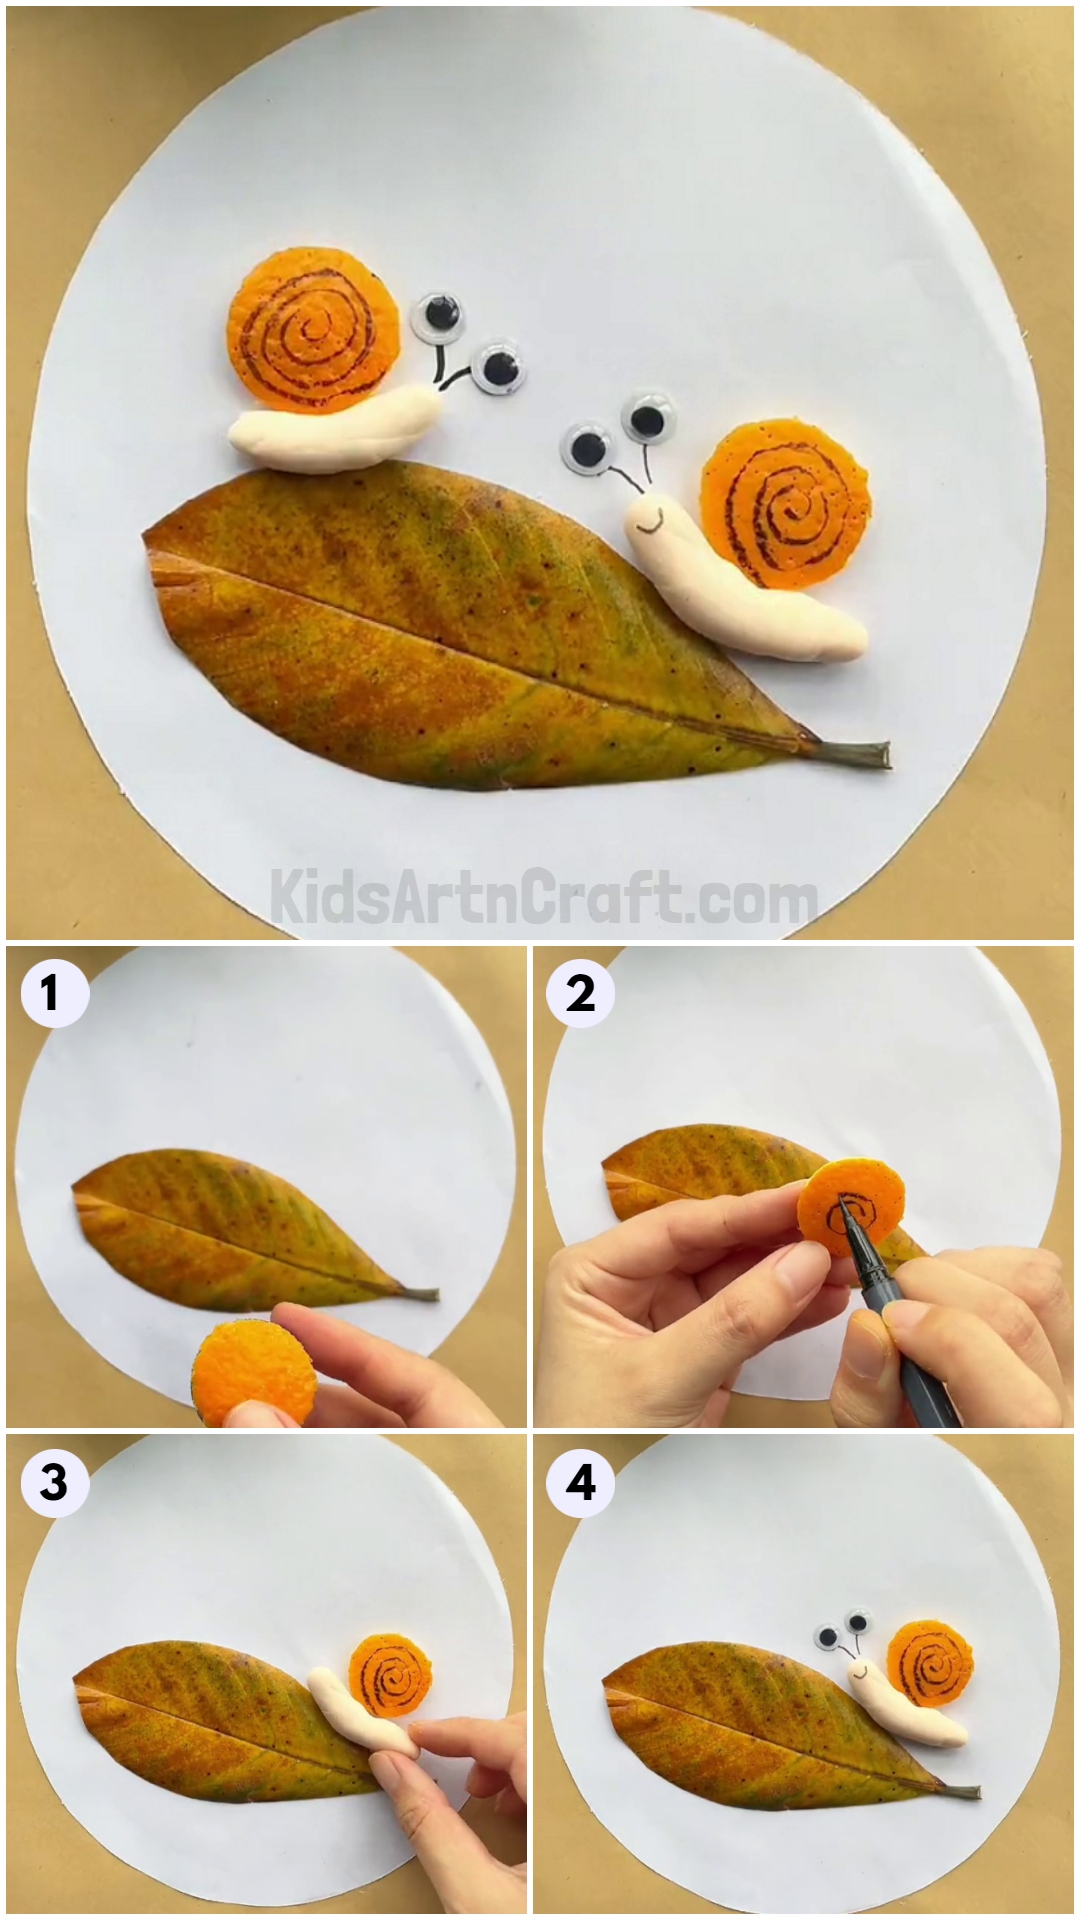 Learn To Make Orange Peel Snail Artwork For Kids